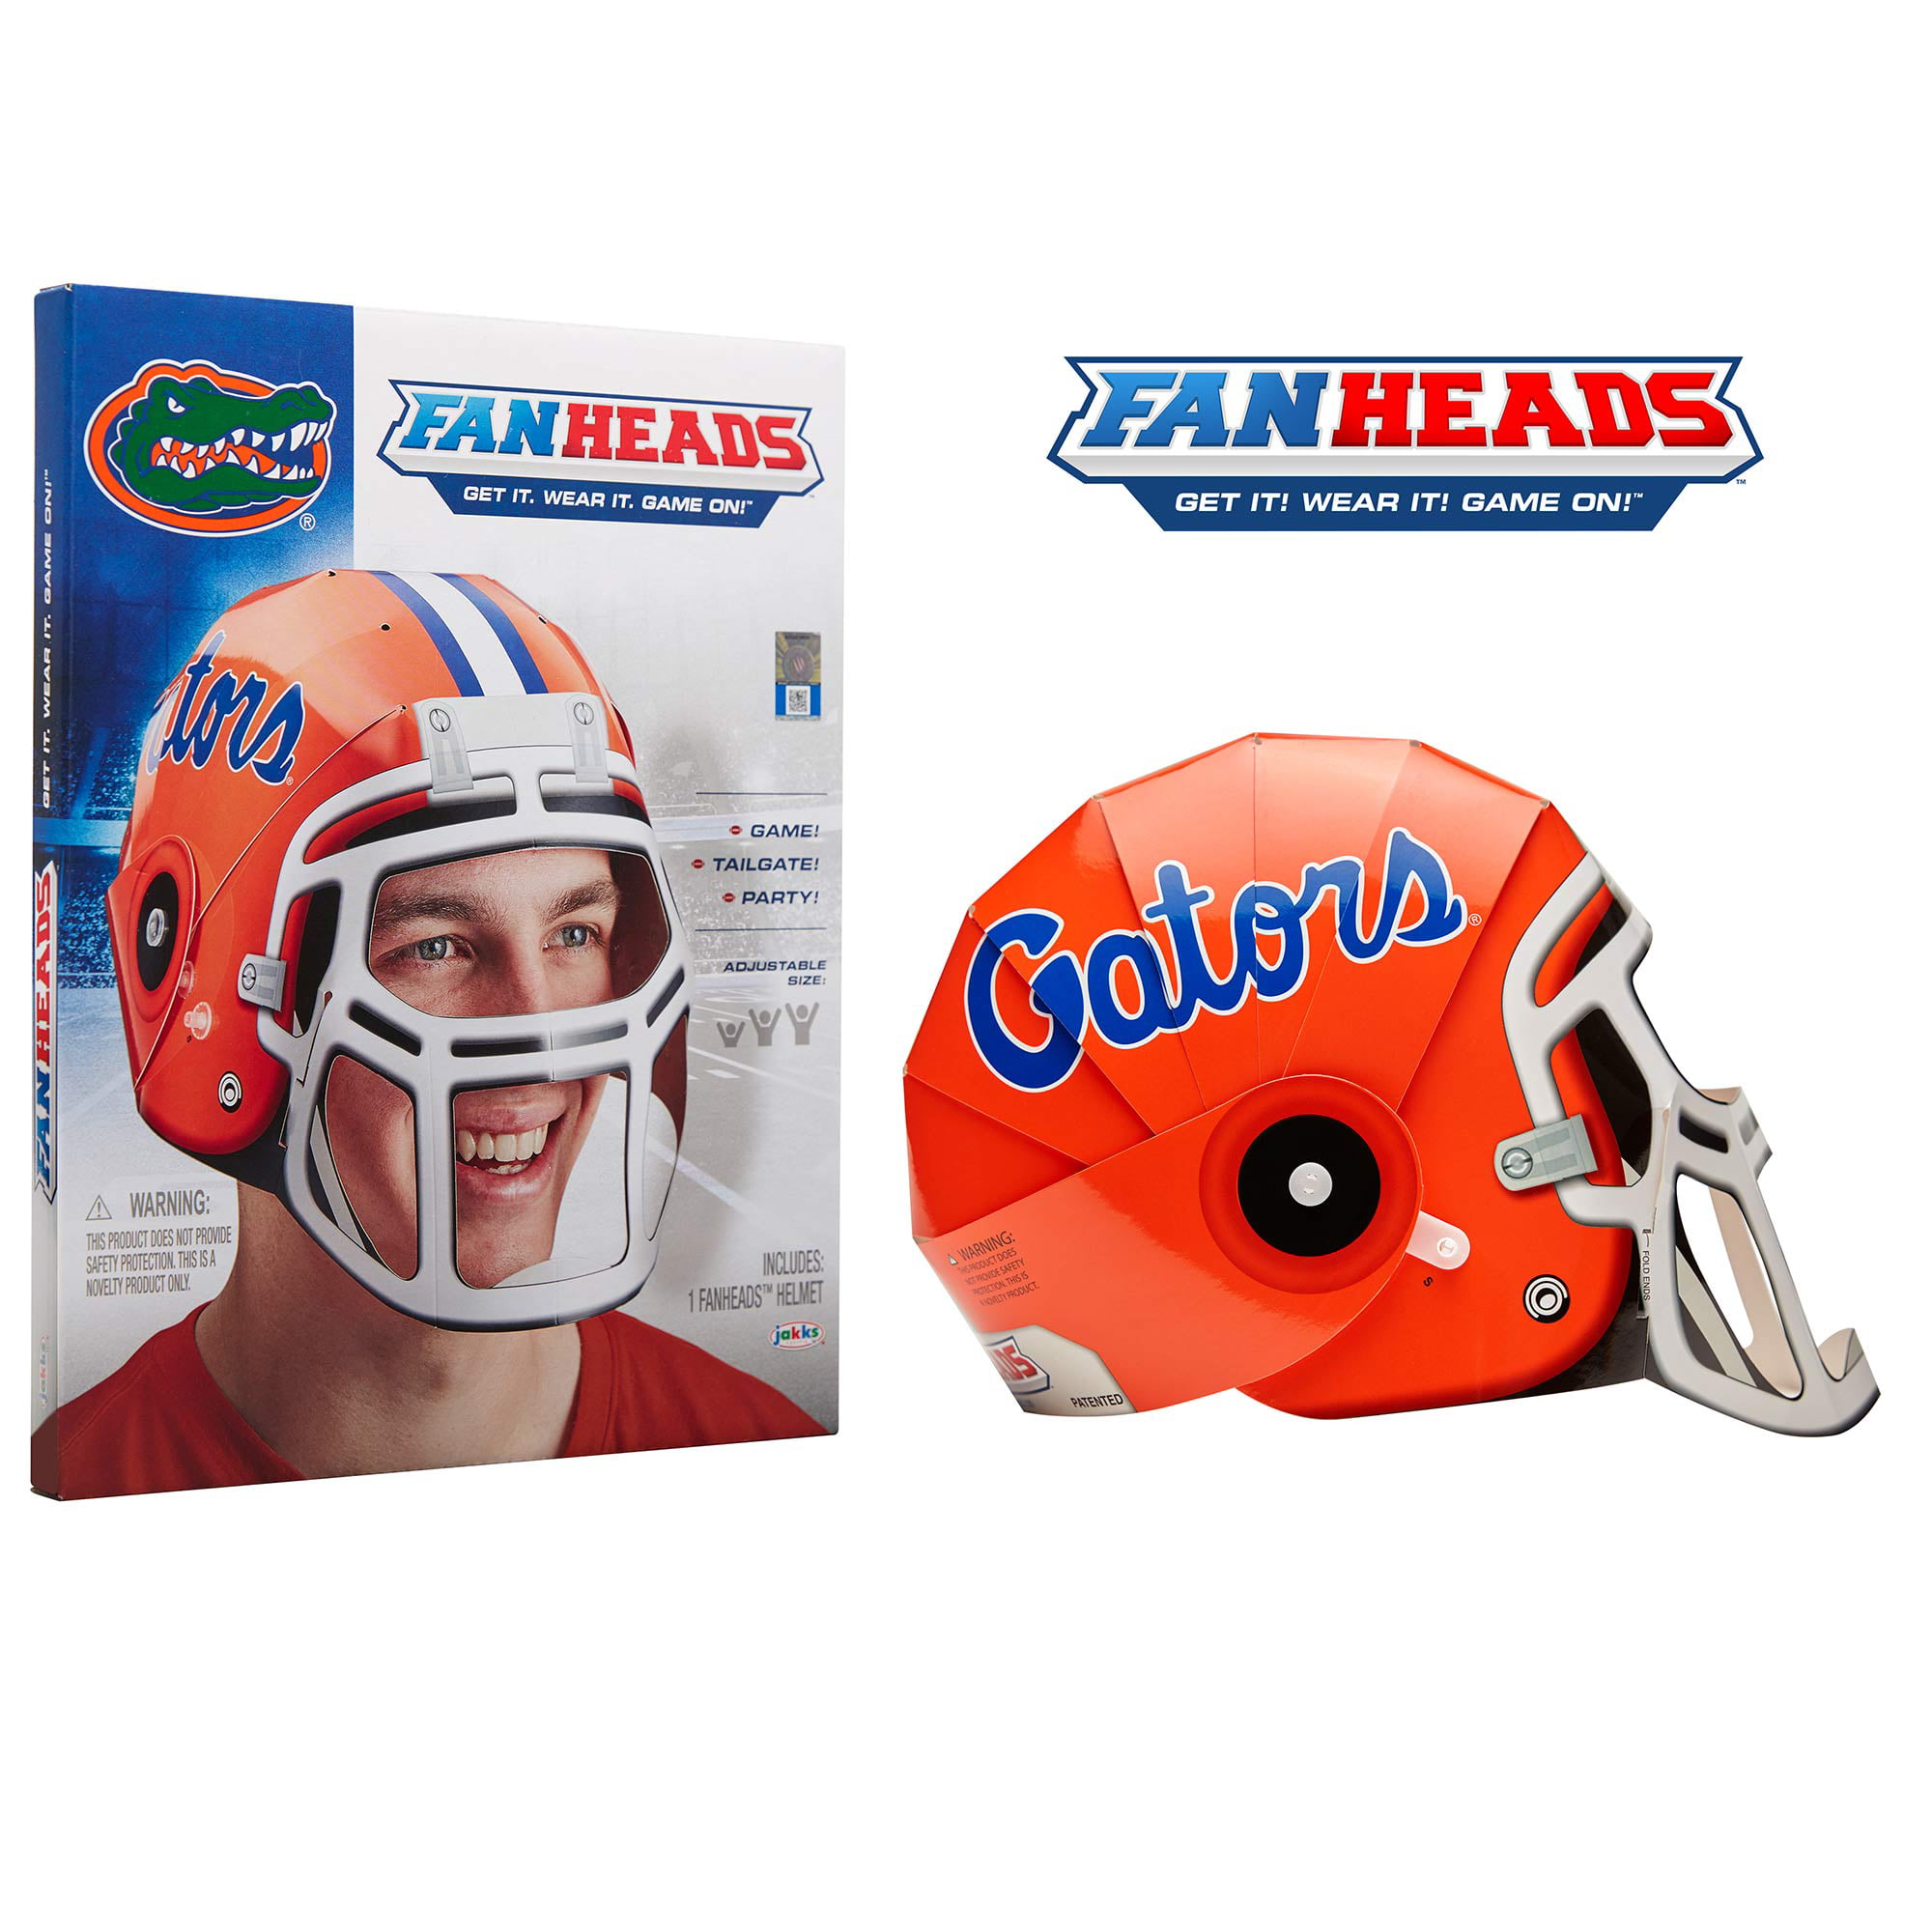 Florida Gators Fan Heads Helmet  No Size  Walmart.com  Walmart.com